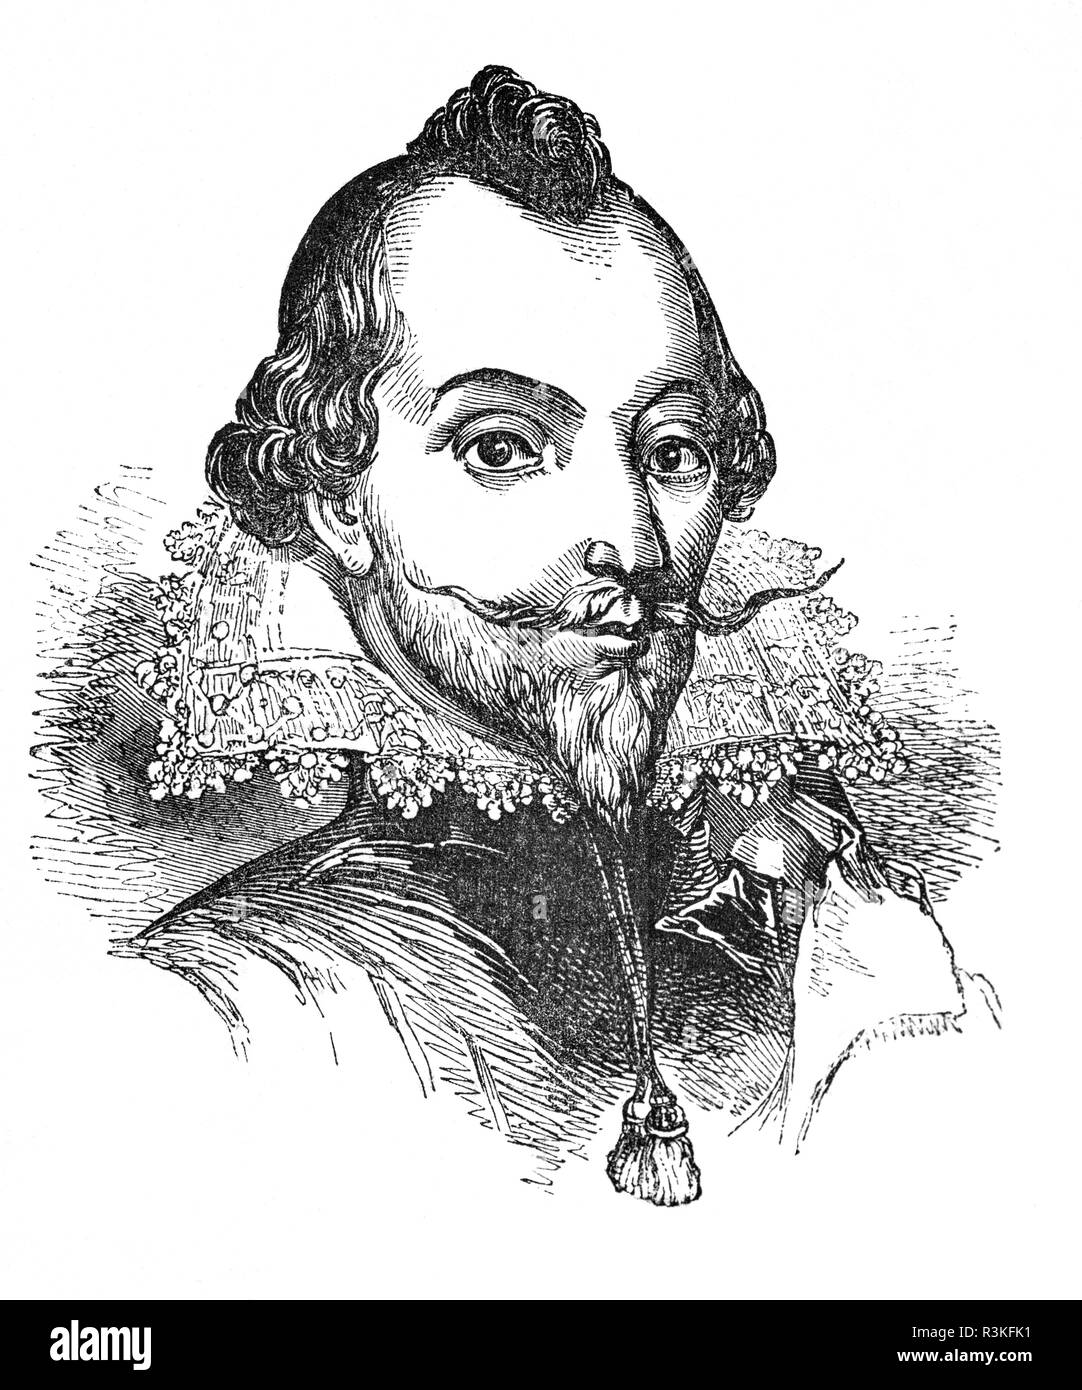 William Drummond (1585-1649), genannt "der Hawthornden", war ein schottischer Dichter an Hawthornden Schloss, Midlothian, Schottland geboren. Seine wichtigsten Werke sind die Cypresse Grove, ein Essay über die Torheit der Furcht vor dem Tod, die große Fülle der Abbildung aufweist, und ein außerordentliches Kommando der musikalischen Englisch. Sie manifestiert, keine charakteristischen schottische Element, aber verdankt seine Geburt und Inspiration eher für die englischen und italienischen Meister. Er war im Wesentlichen ein Anhänger von Spenser, aber inmitten all seiner Sinnlichkeit, und selbst in diesen Zeilen die meisten auffallend schön, es ist ein Hauch von Melancholie. Stockfoto